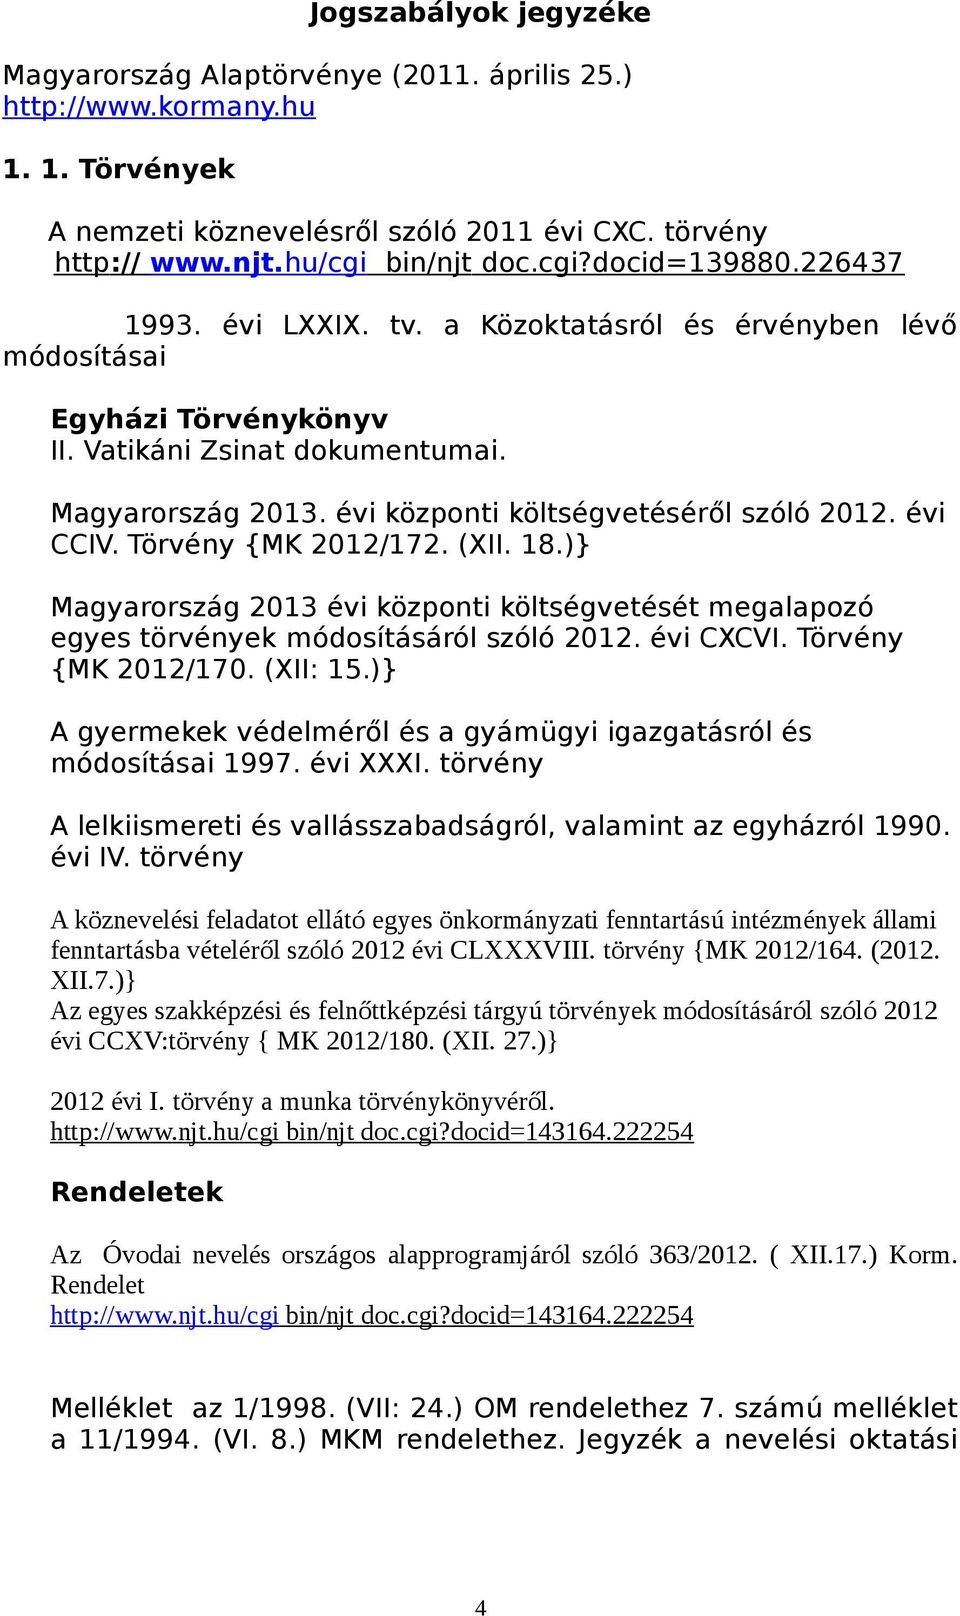 Törvény {MK 2012/172. (XII. 18.)} Magyarország 2013 évi központi költségvetését megalapozó egyes törvények módosításáról szóló 2012. évi CXCVI. Törvény {MK 2012/170. (XII: 15.